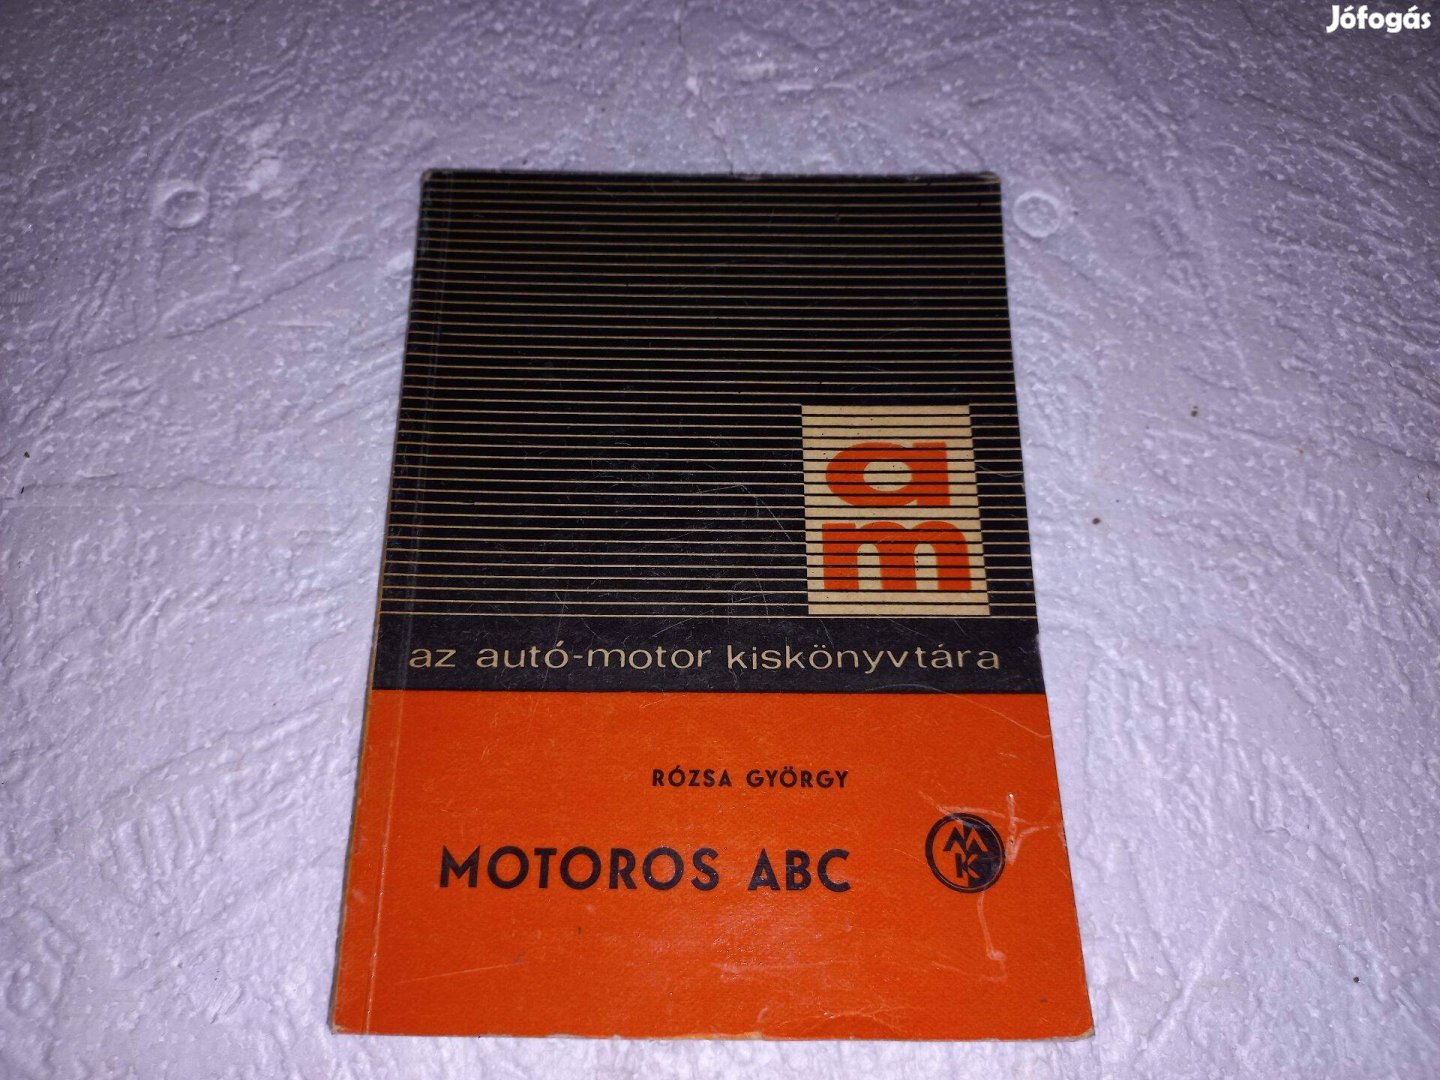 Motoros ABC könyv